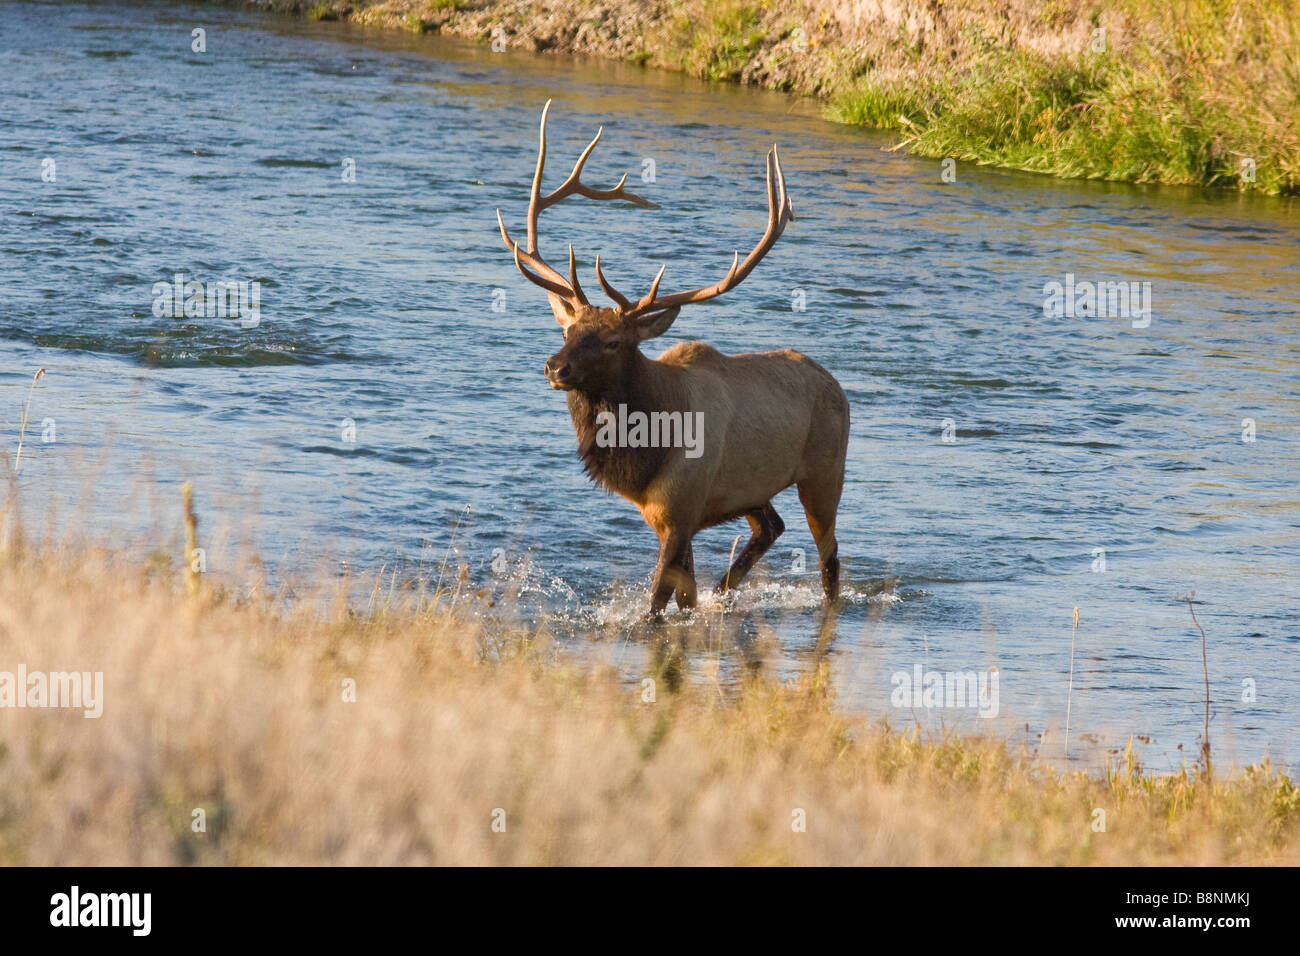 big bull elk crossing river Stock Photo